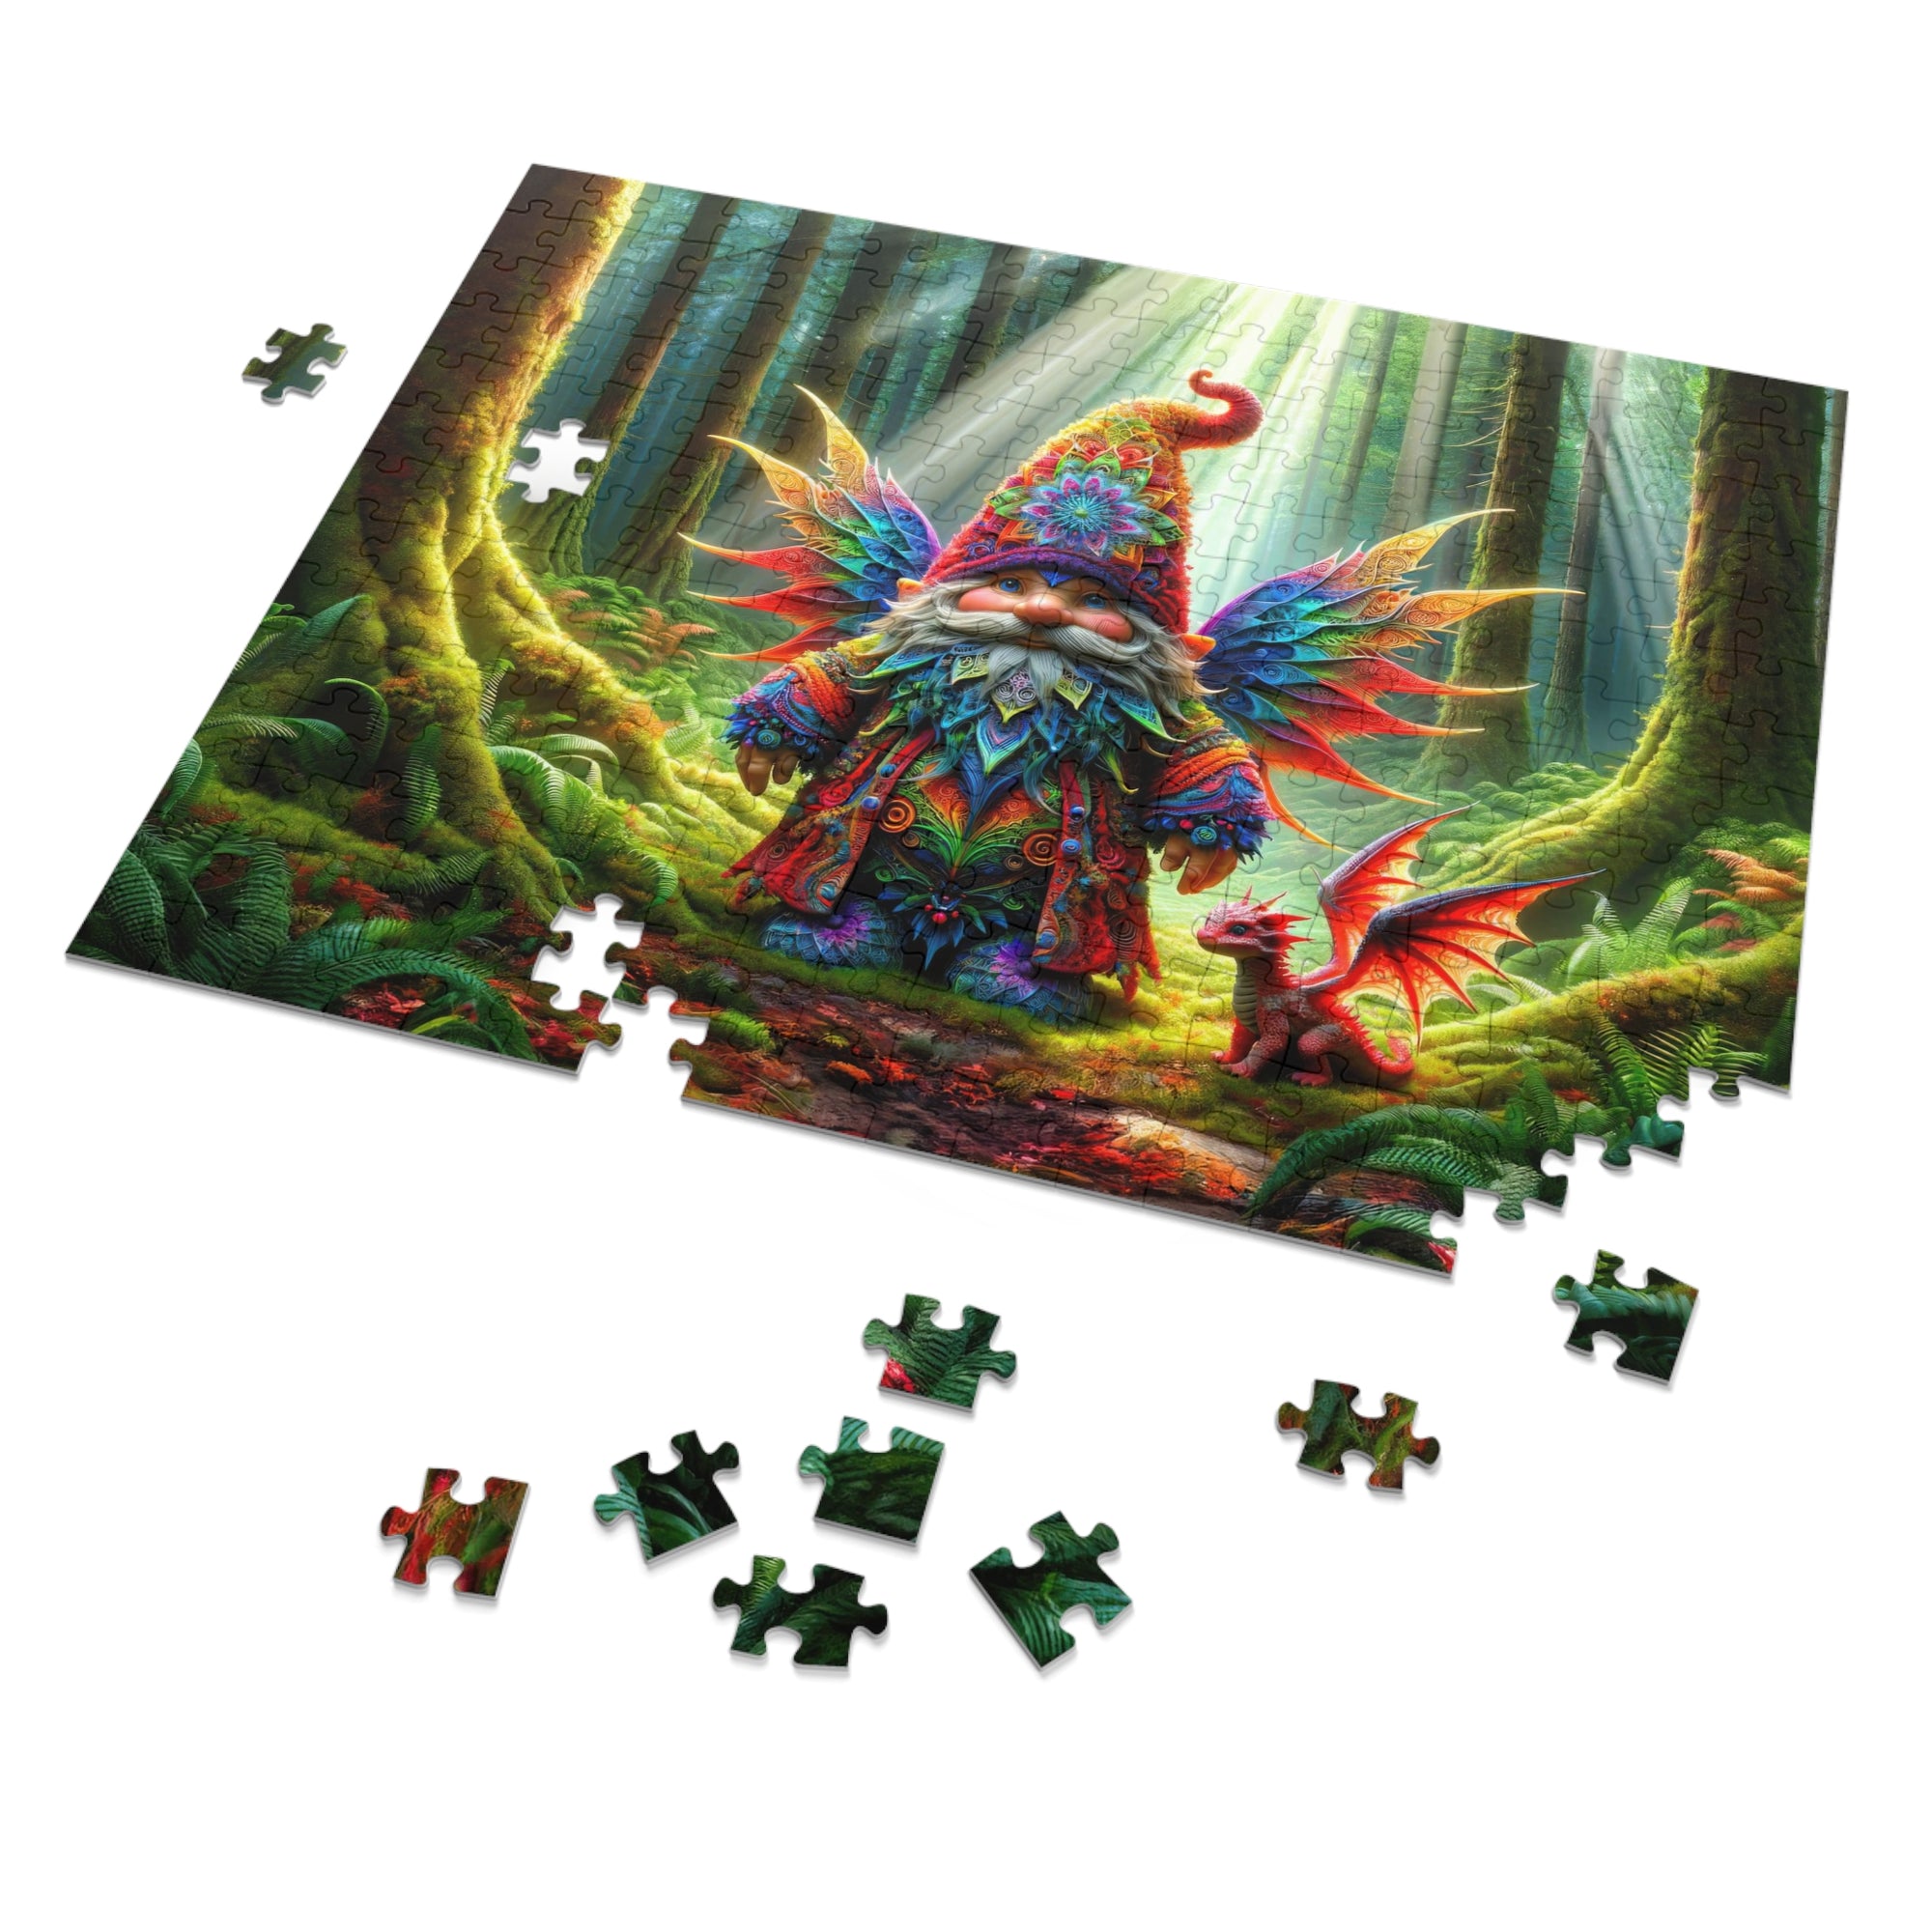 Puzzle Le Gardien de Whimsy Wood